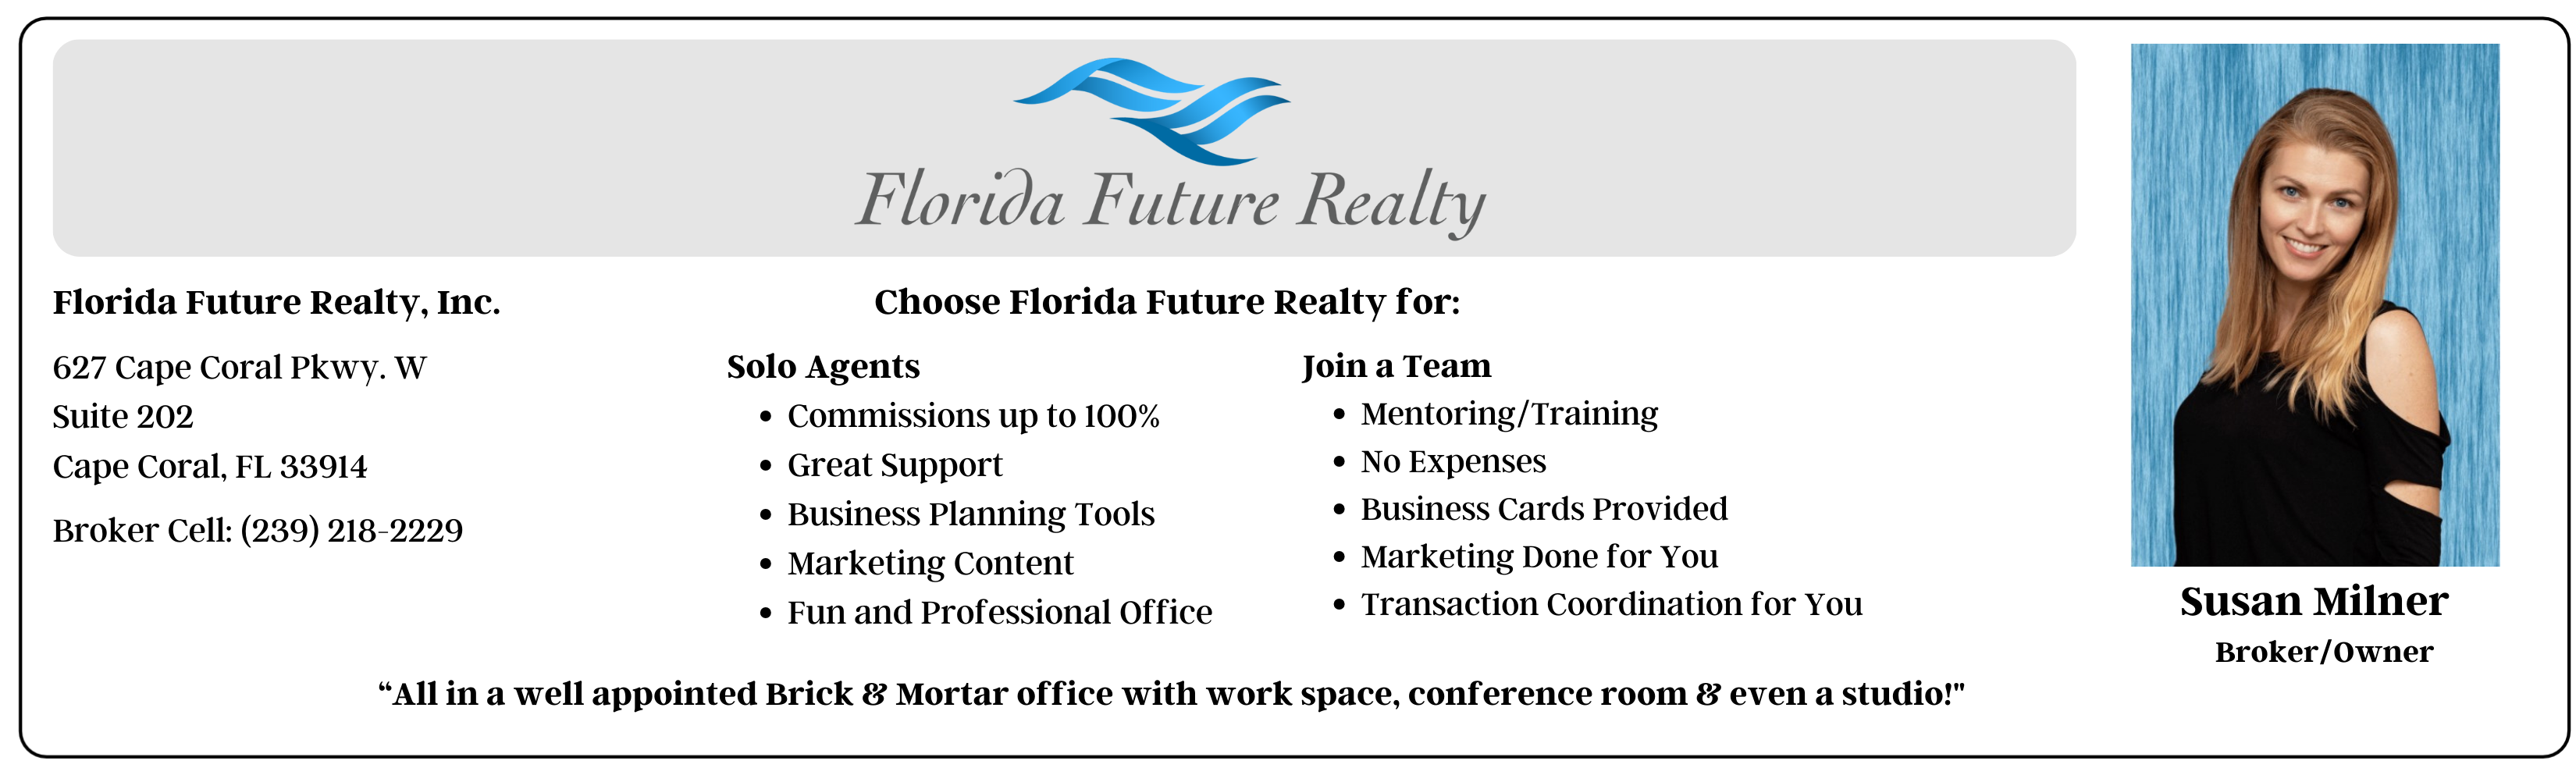 Florida Future Realty, Inc.